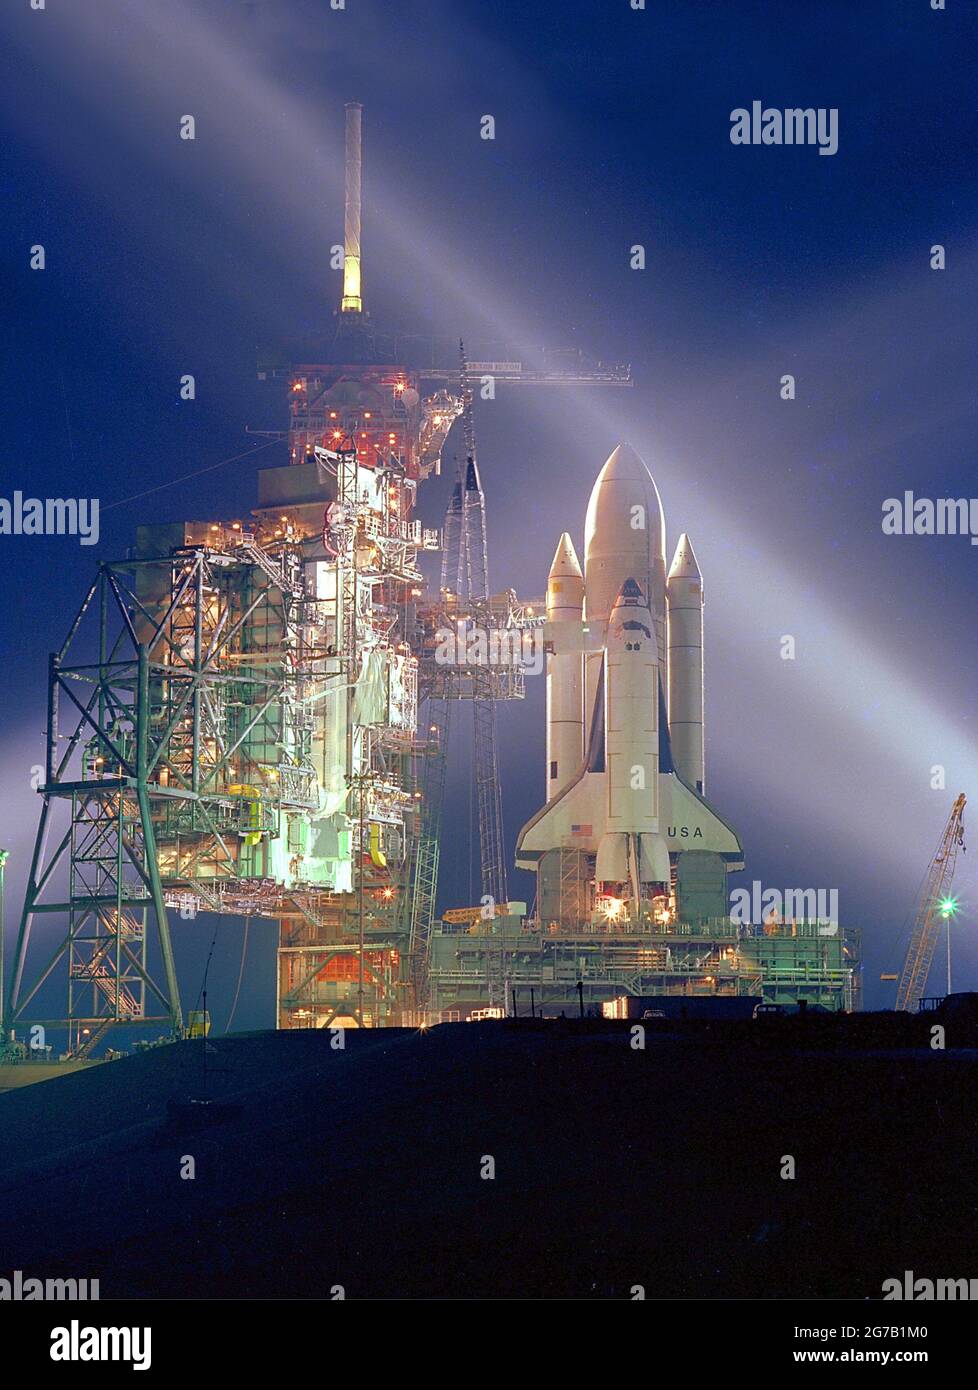 STS-1 Pre-Launch. STS-1 (Space Transportation System-1) war der erste Orbitalflug des Space Shuttle-Programms der NASA. Eine neue Ära des Weltraumflugs begann am 12. April 1981, als das Space Shuttle Columbia vom Kennedy Space Center der NASA in Florida in die Umlaufbahn stieg. Eine einzigartige optimierte und verbesserte Version eines NASA-Bildes / Credit NASA Stockfoto